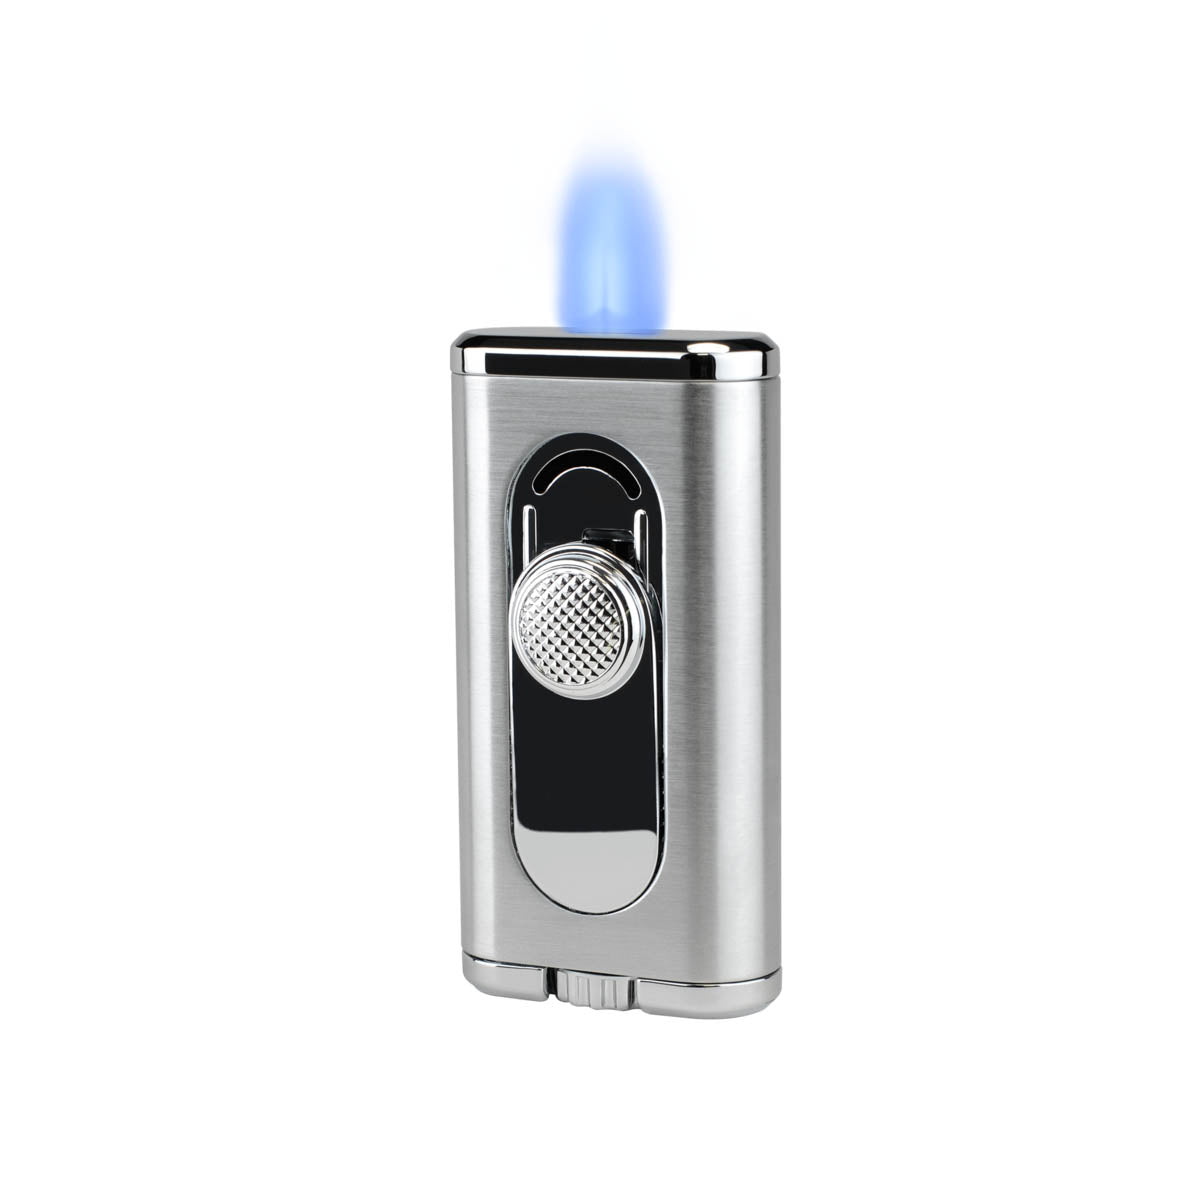 XIKAR® Verano Flat-flame Lighter